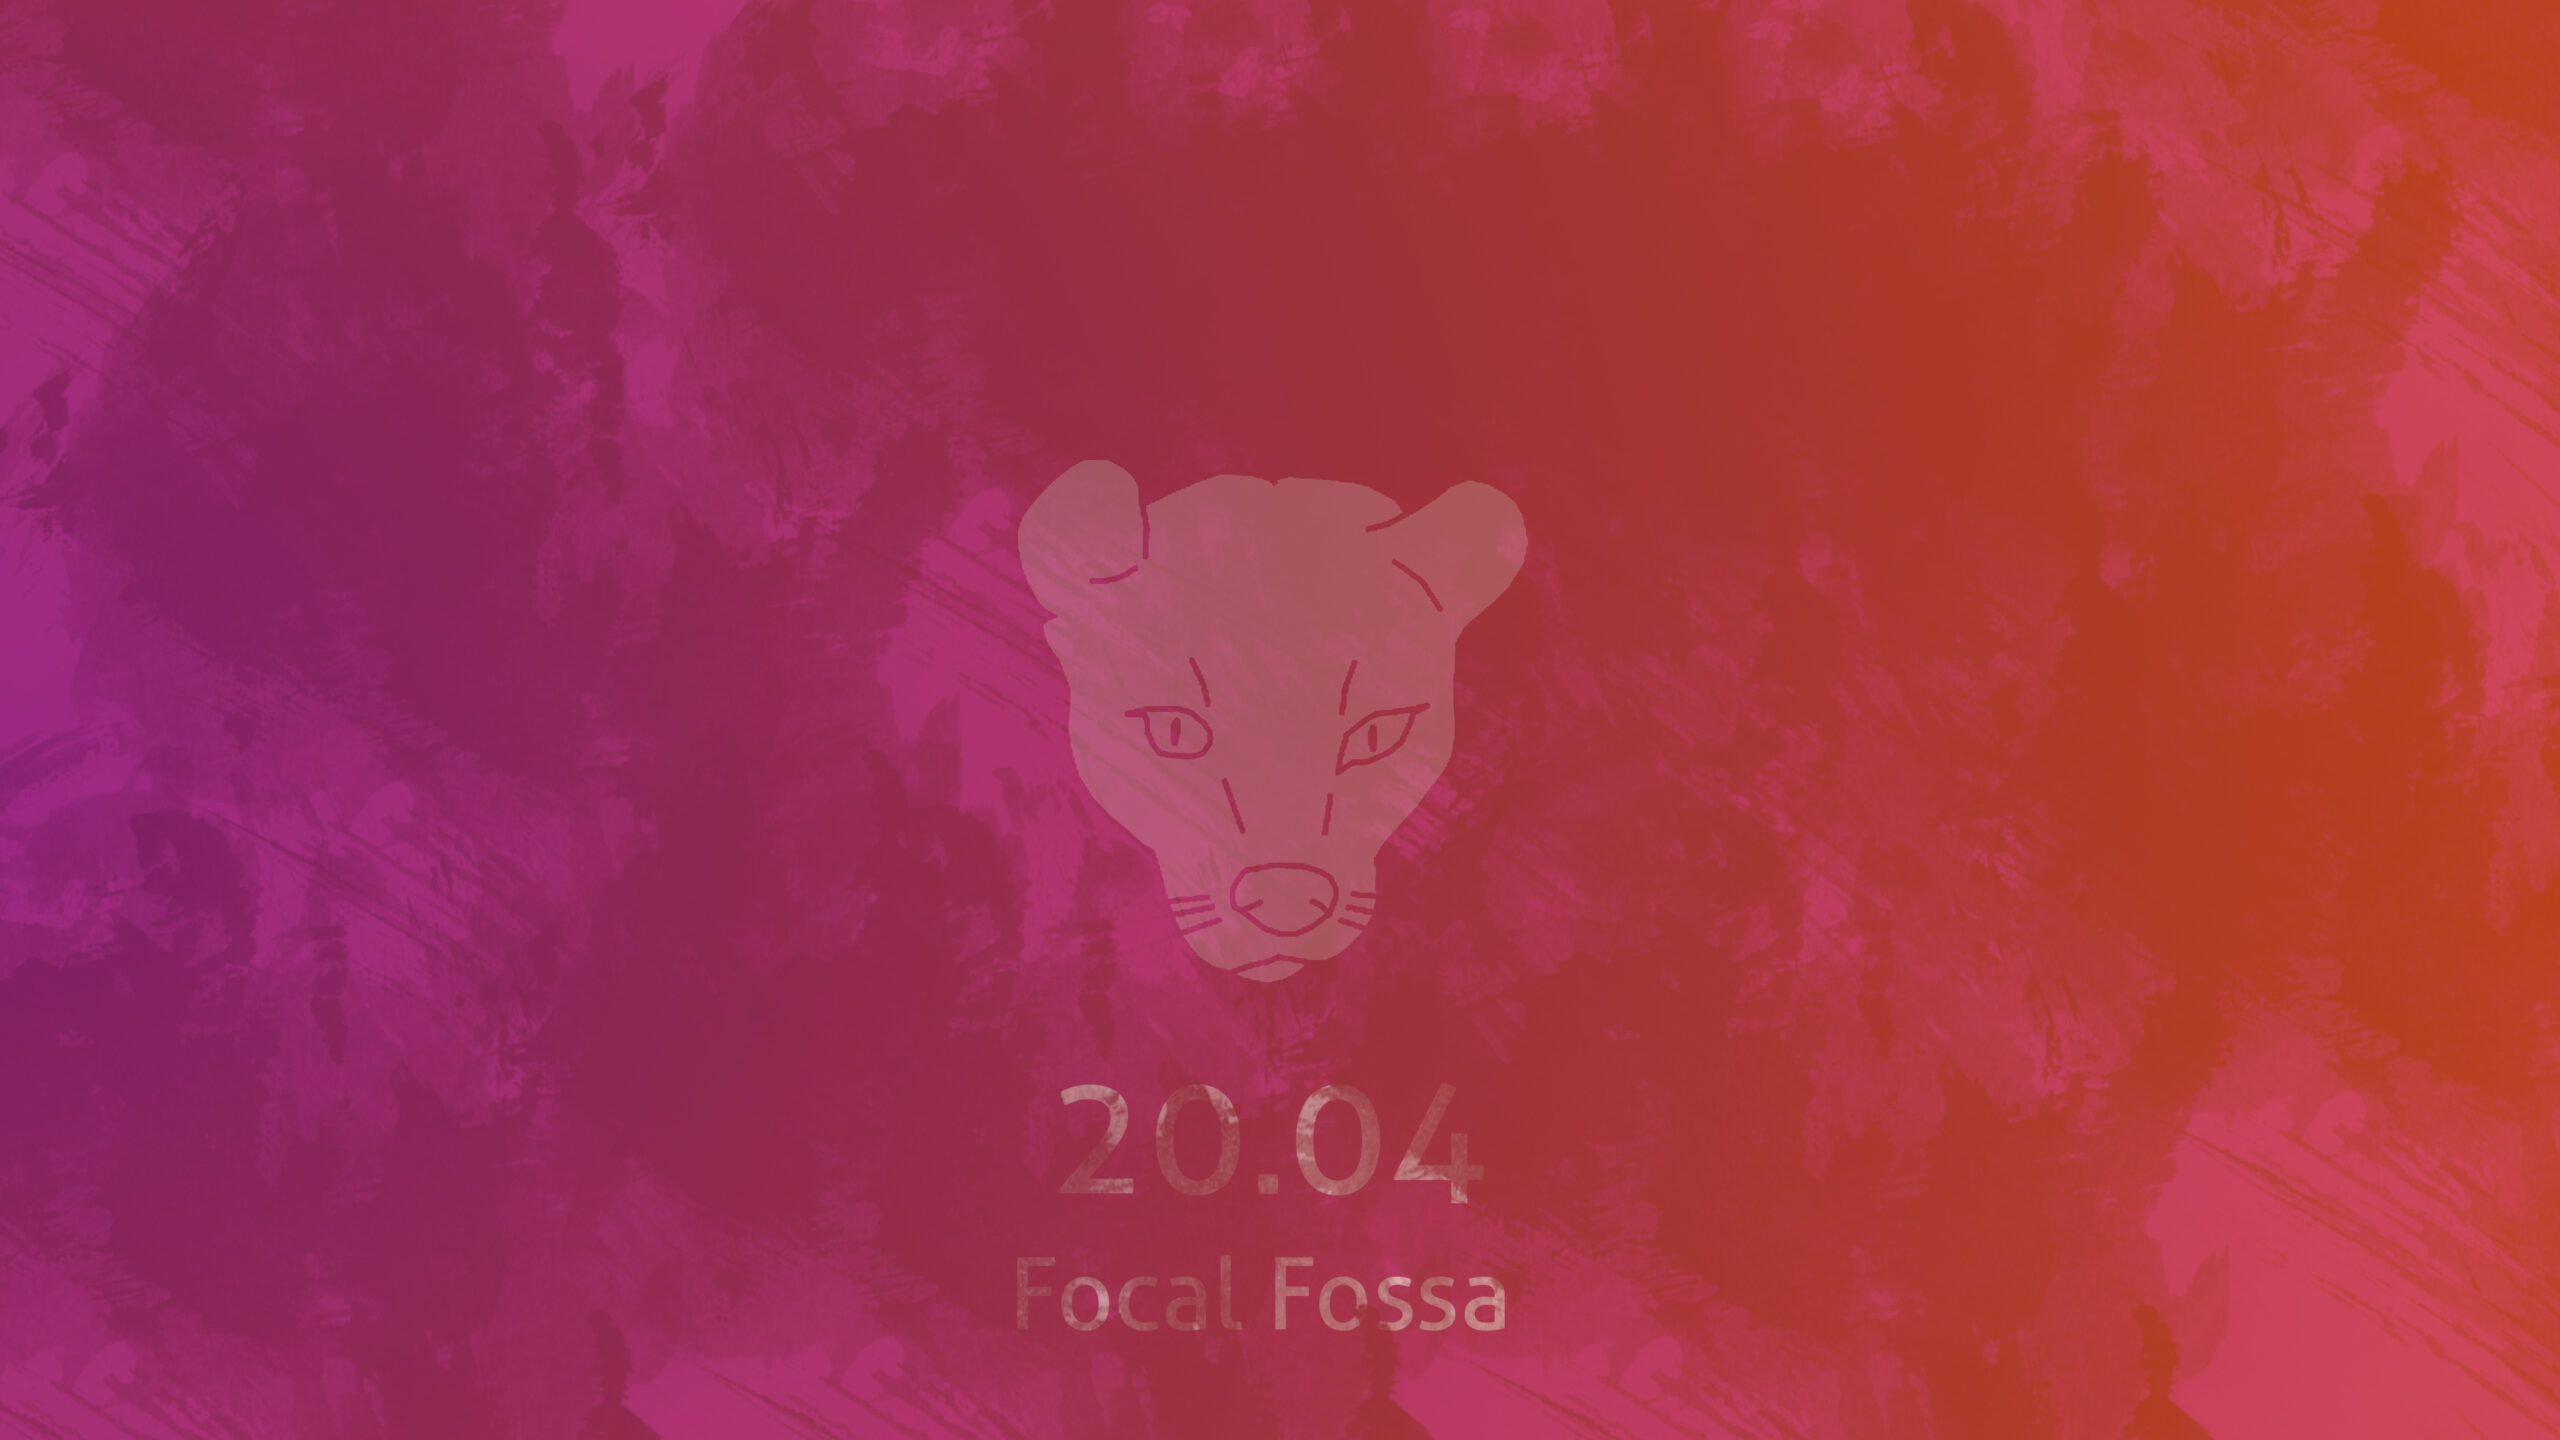 ubuntu 20.04 focal fossa fractional scaling